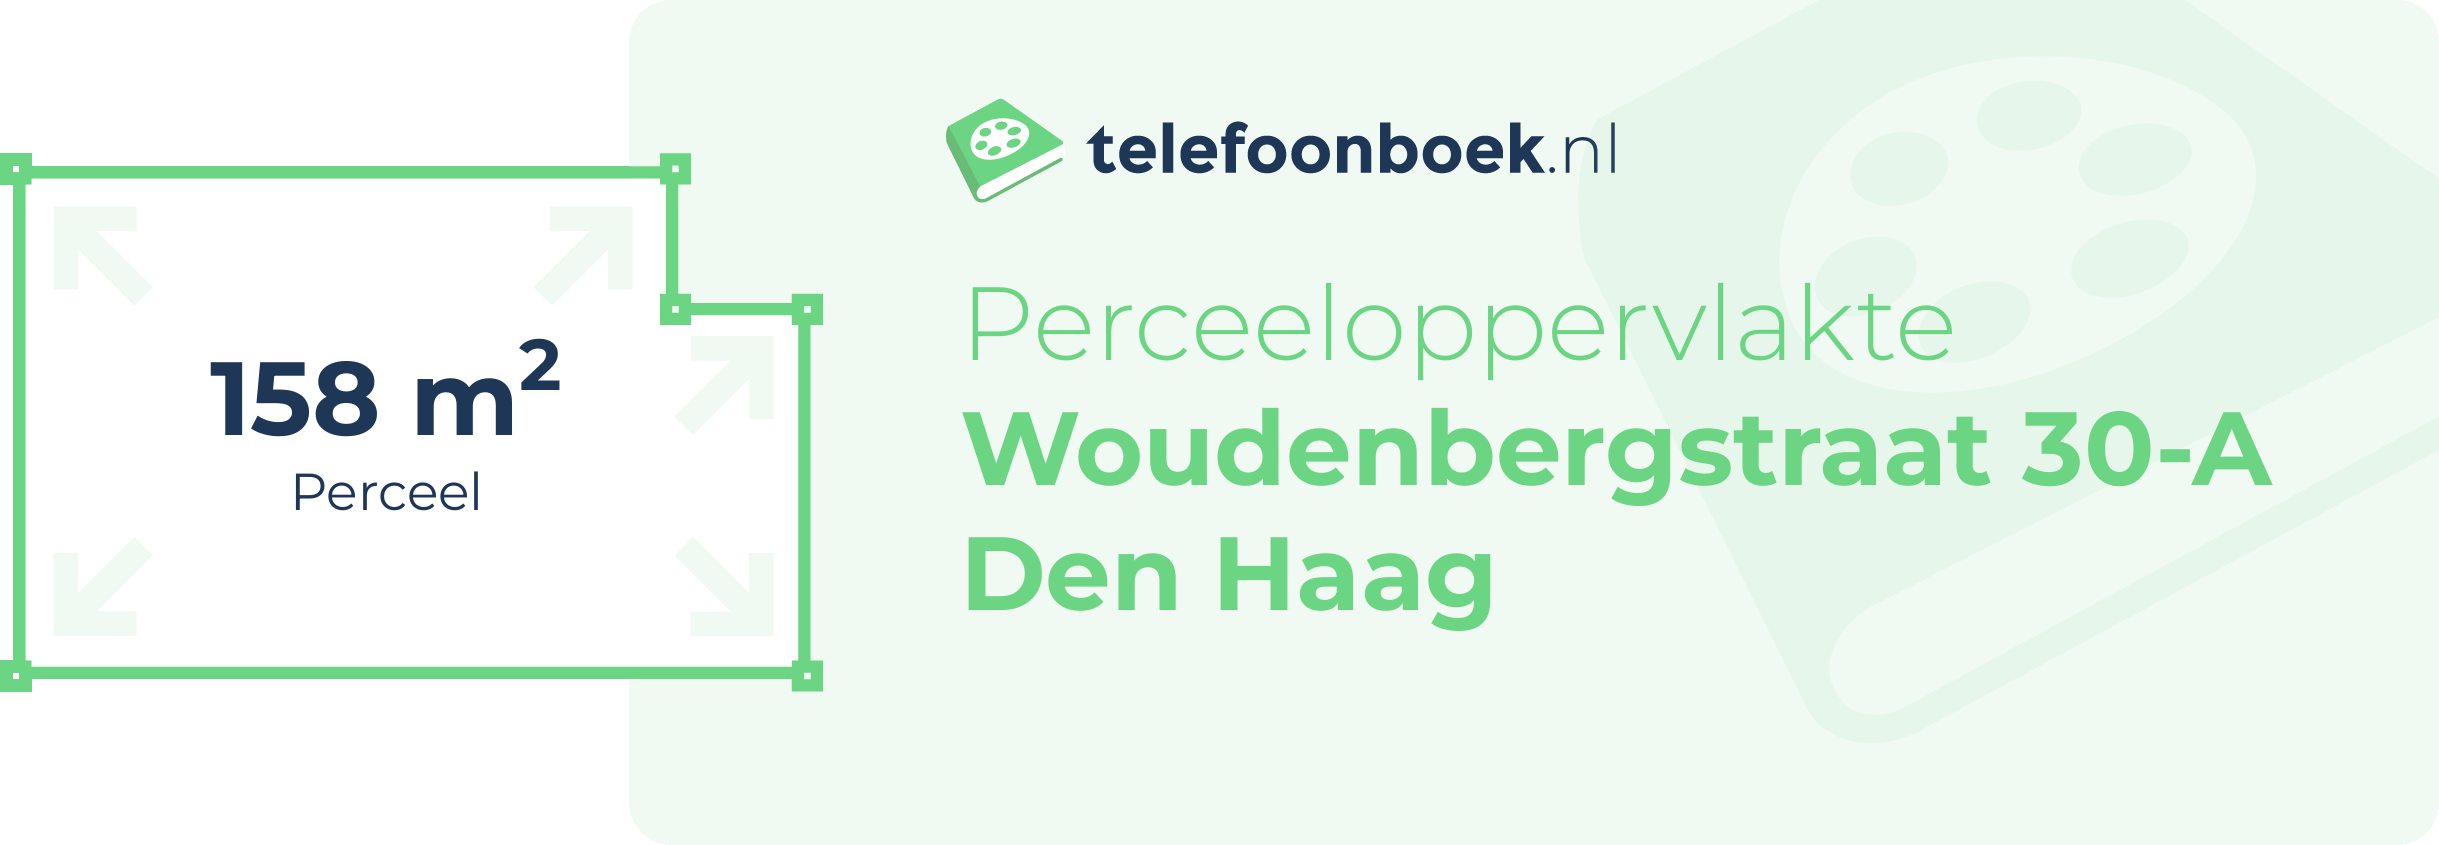 Perceeloppervlakte Woudenbergstraat 30-A Den Haag